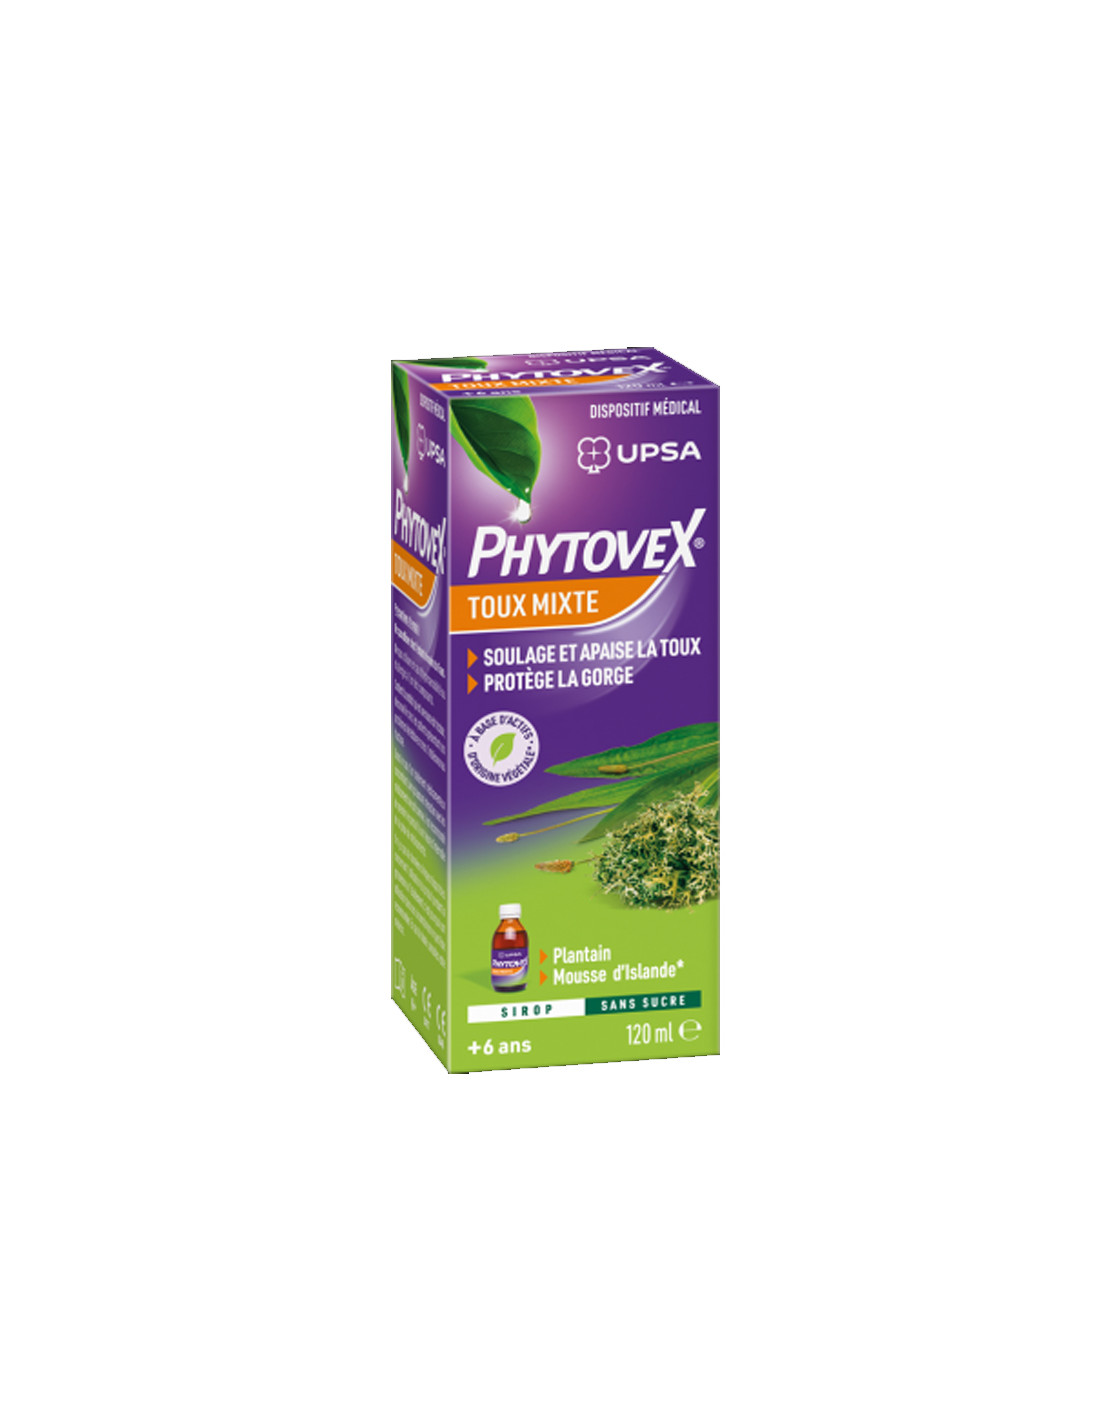 Sirop contre la toux Phytoxil sans sucre - A base de plantes